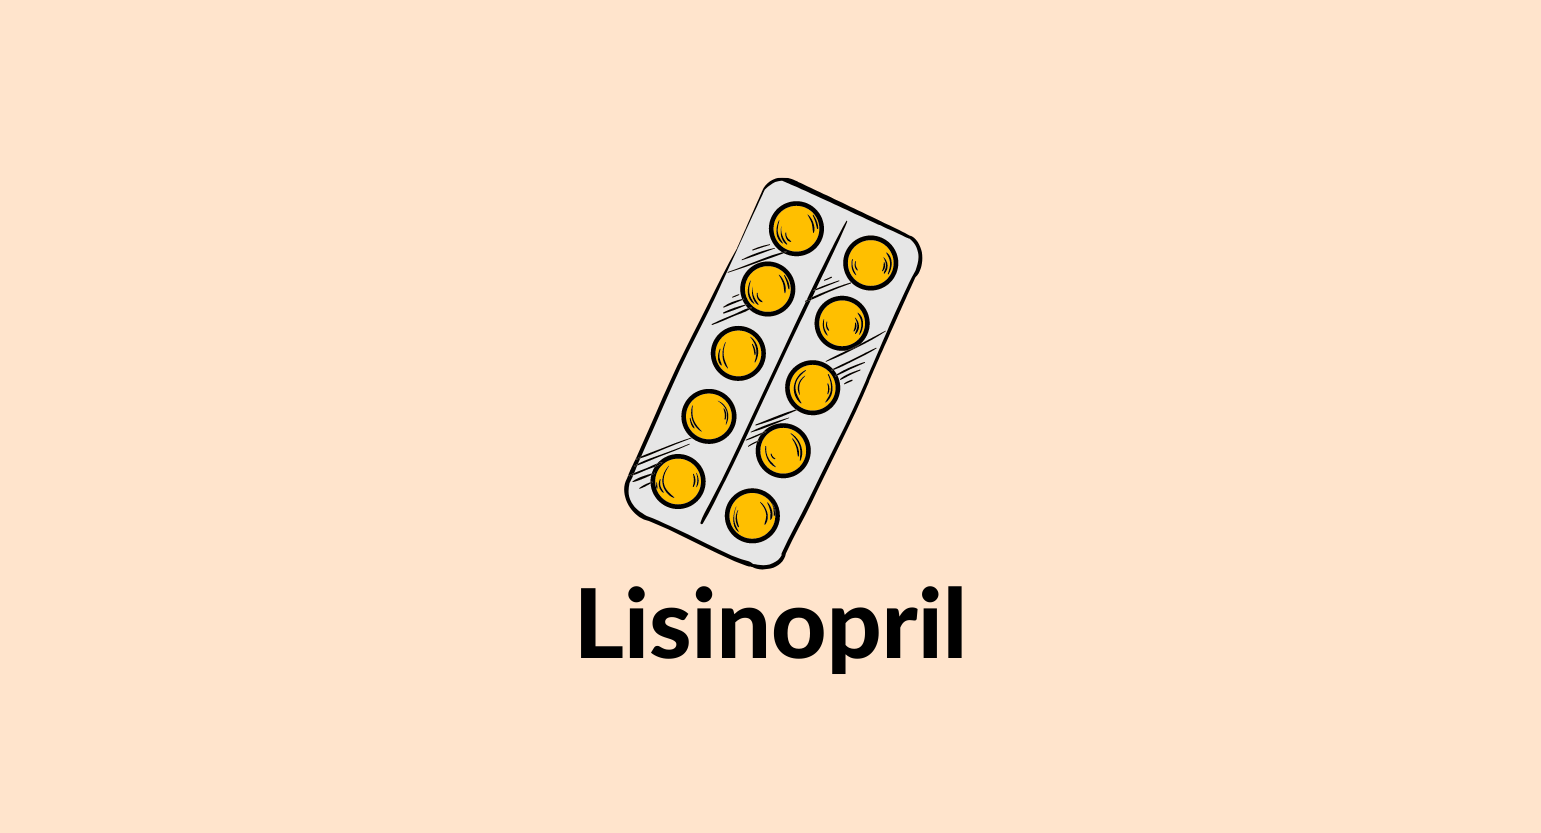 Lisinopril illustration